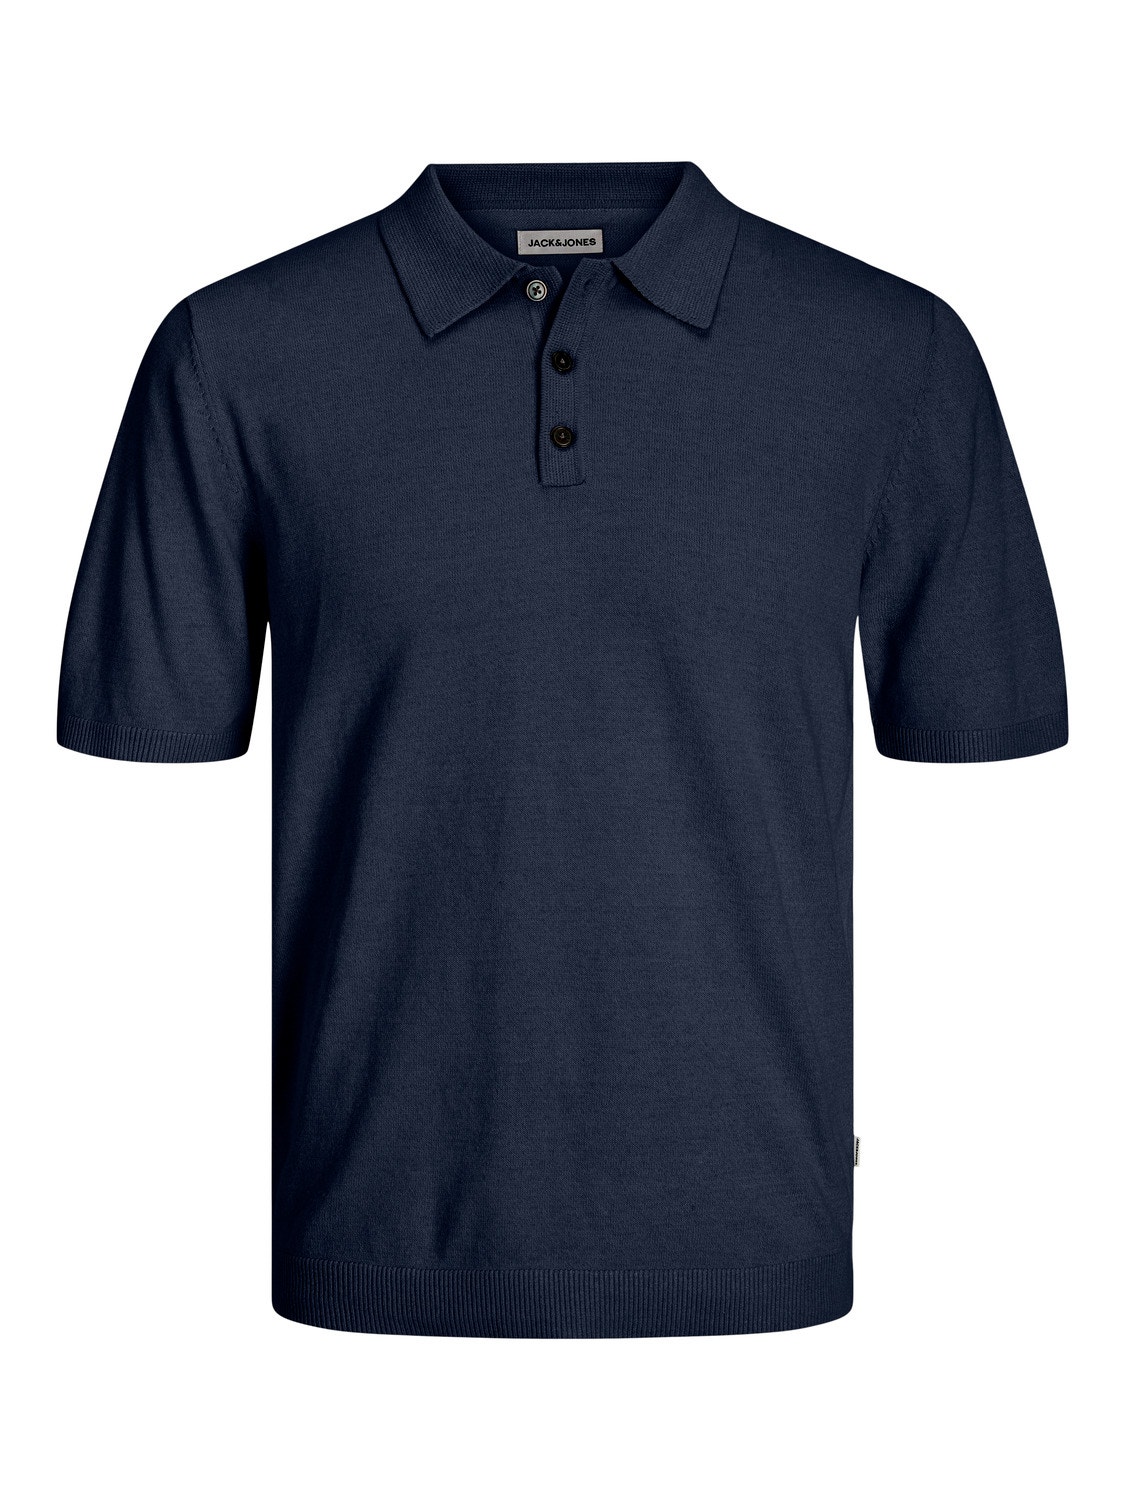 Jack & Jones Enfärgat T-shirt -Navy Blazer - 12254573